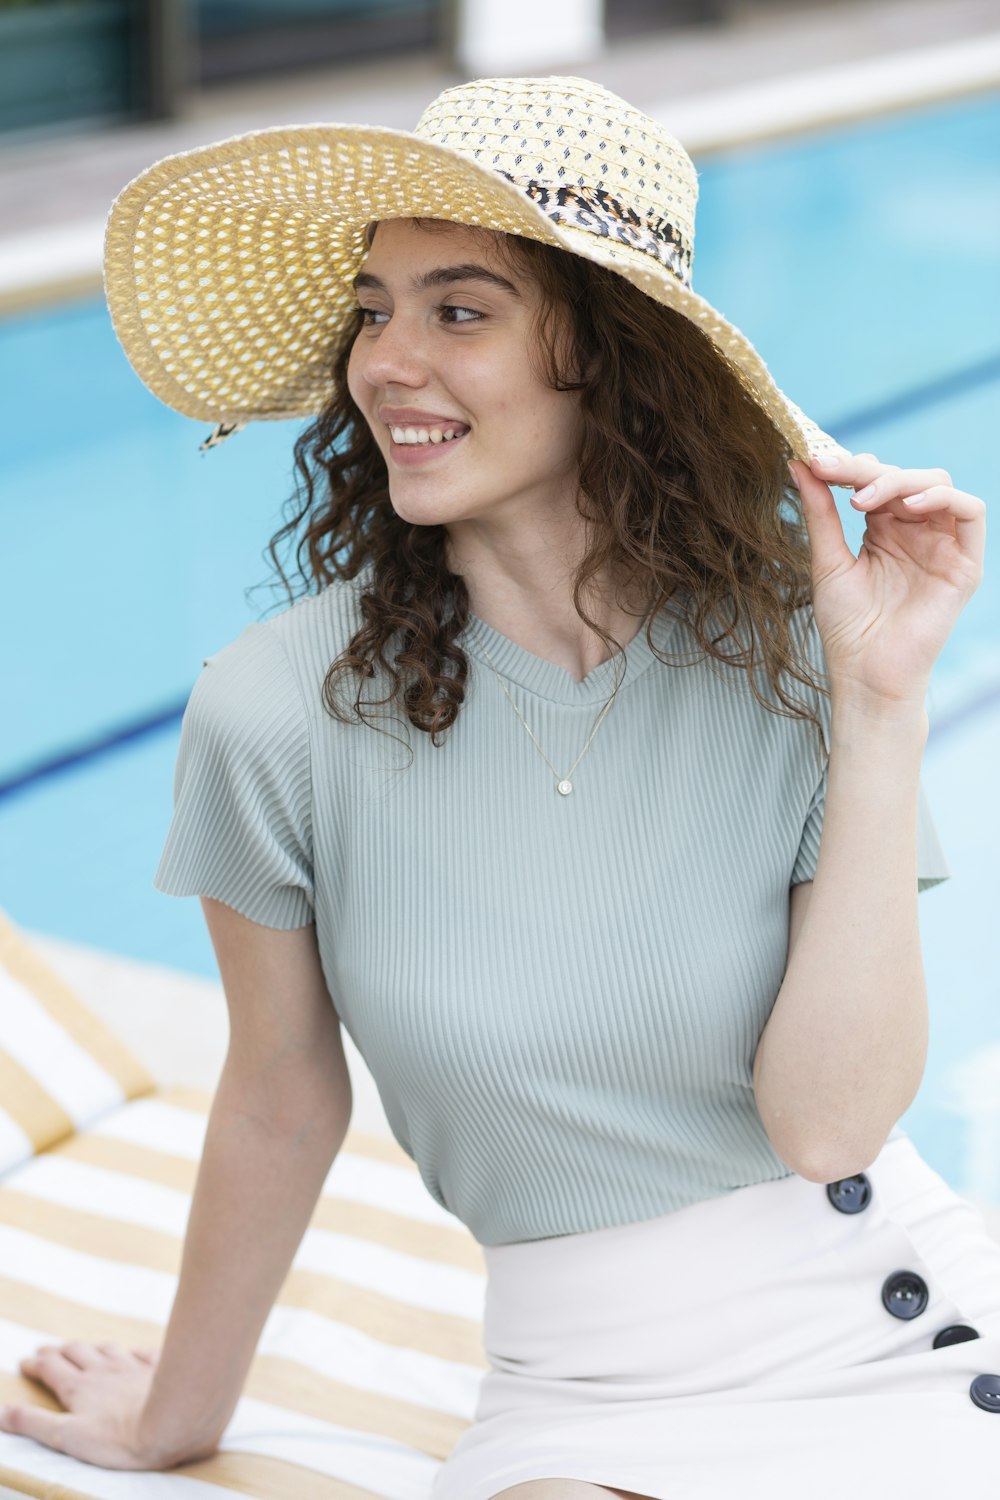 Femme en robe rayée blanche et bleue portant un chapeau de paille marron